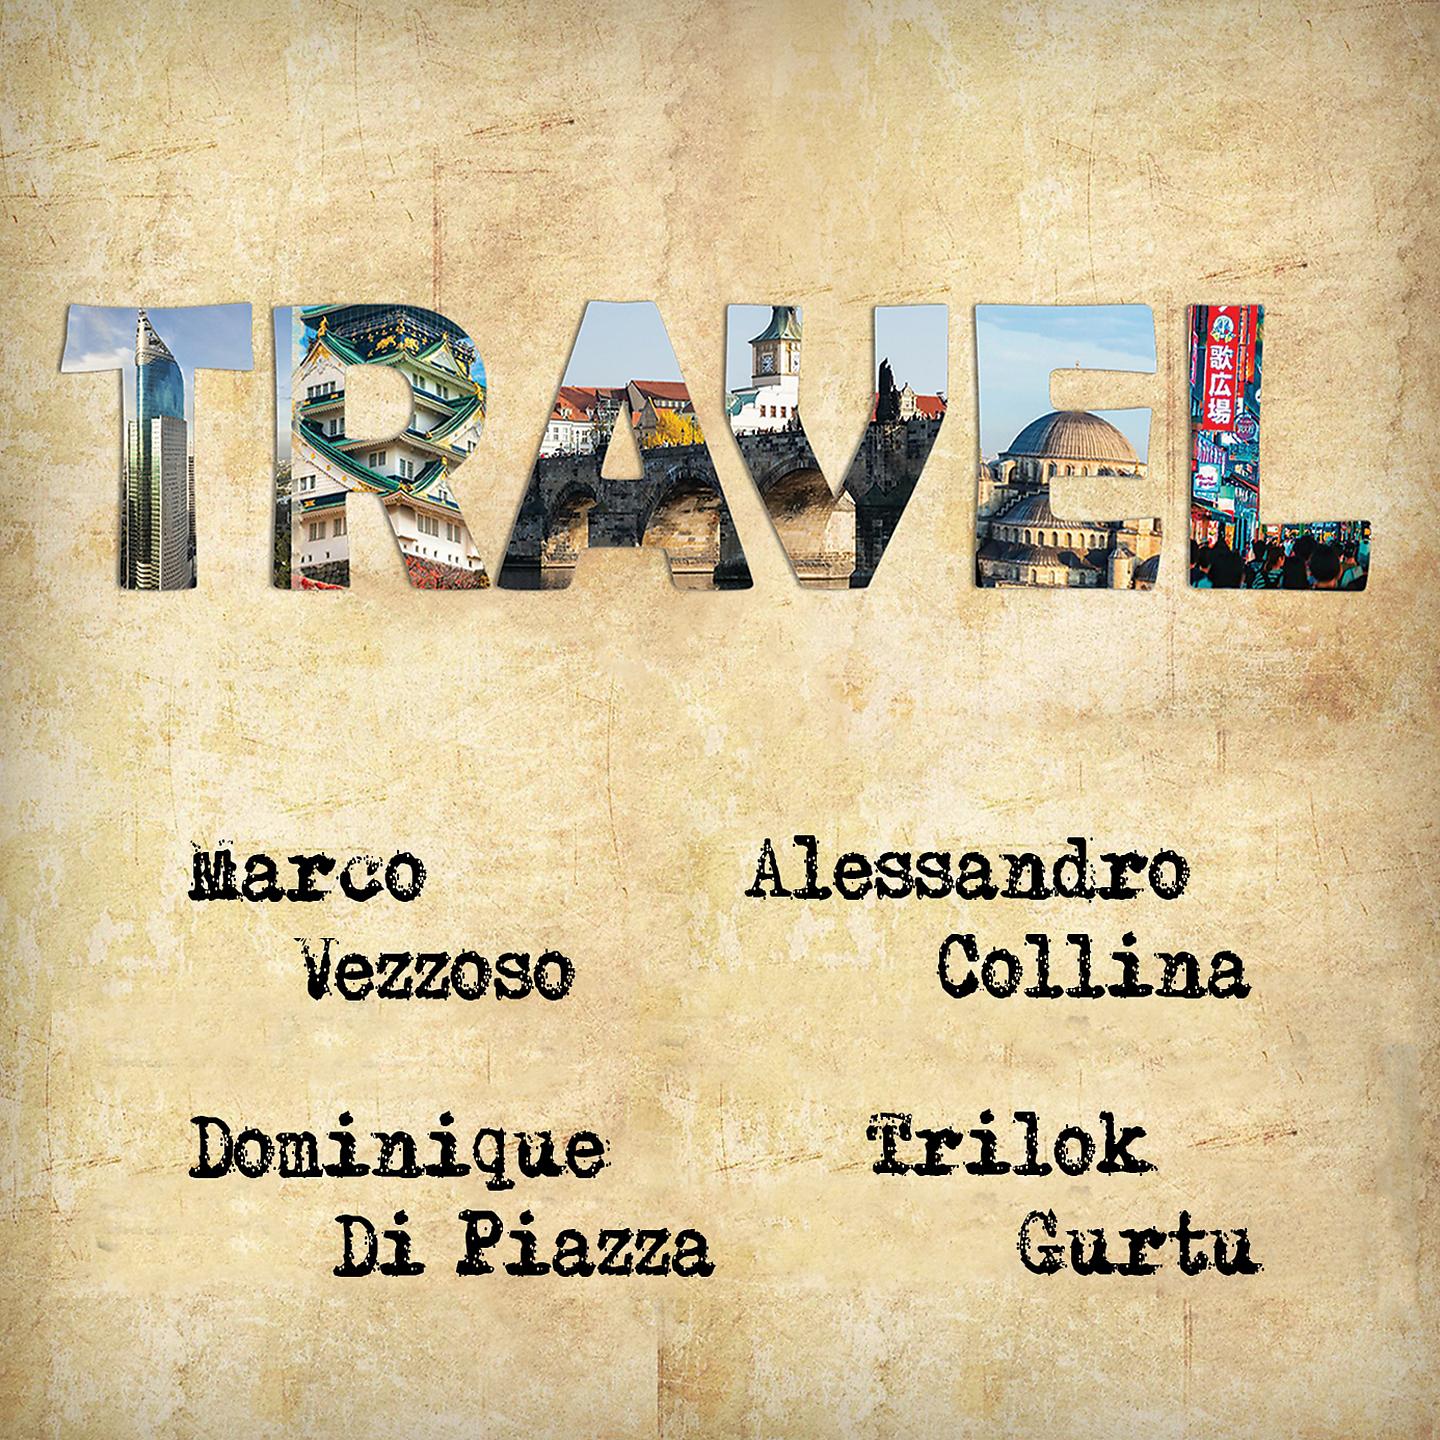 Постер альбома Travel